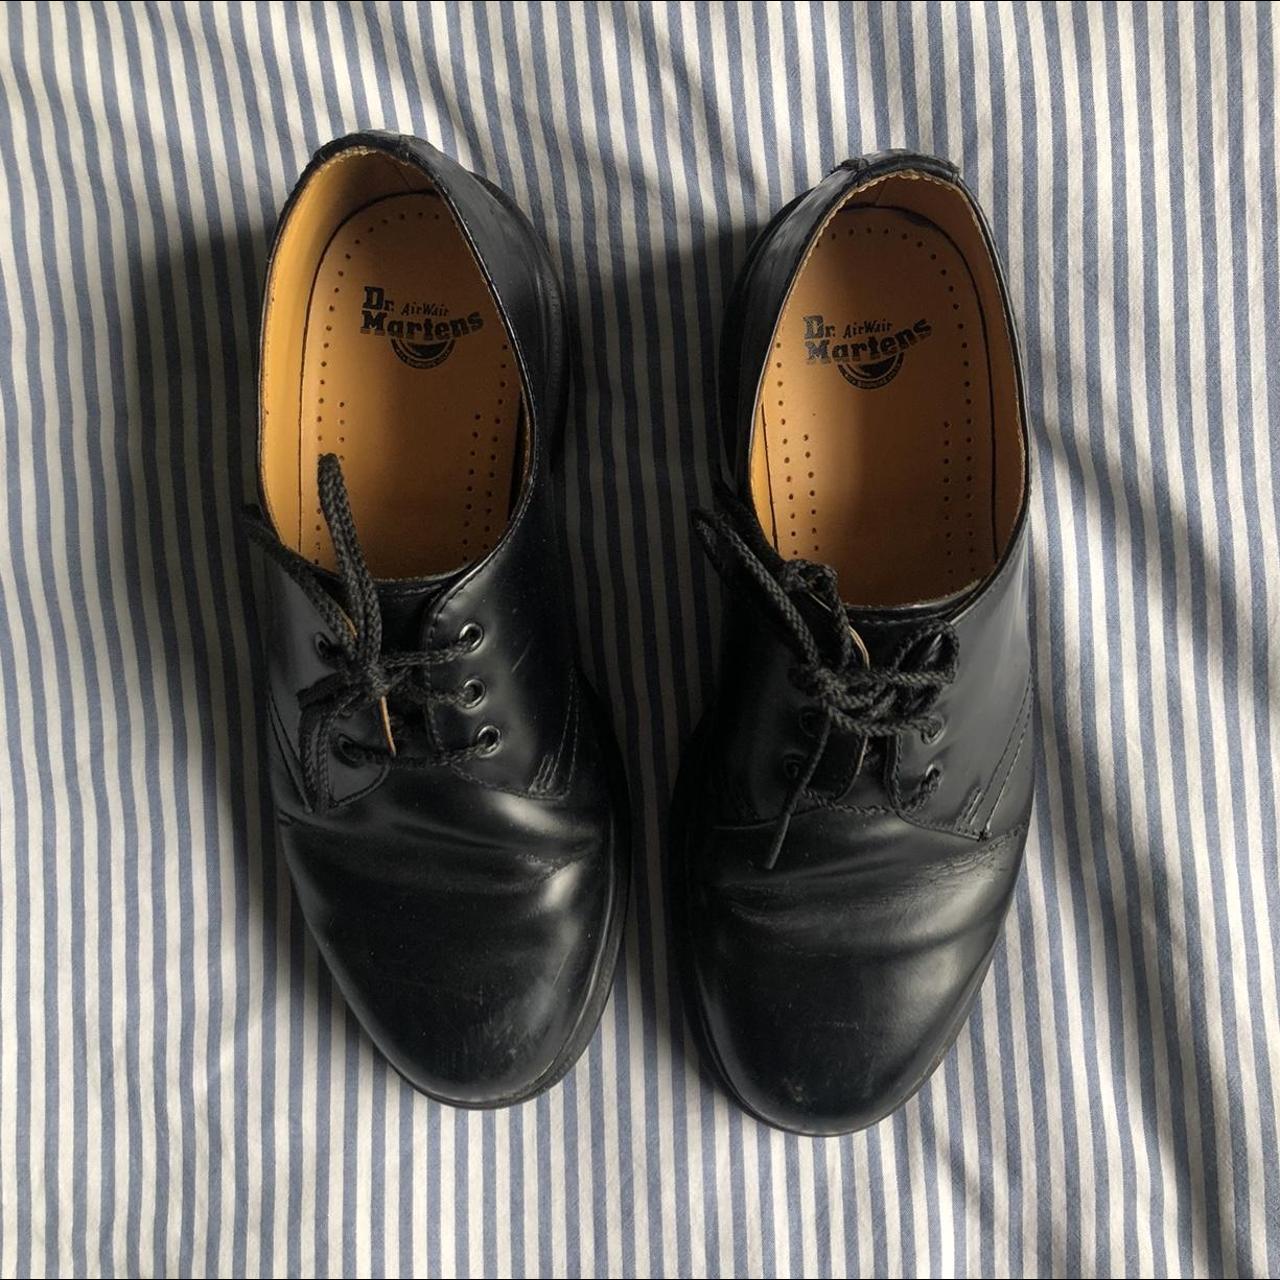 Dr Martens all black shoe boots. Low Dr martens... - Depop